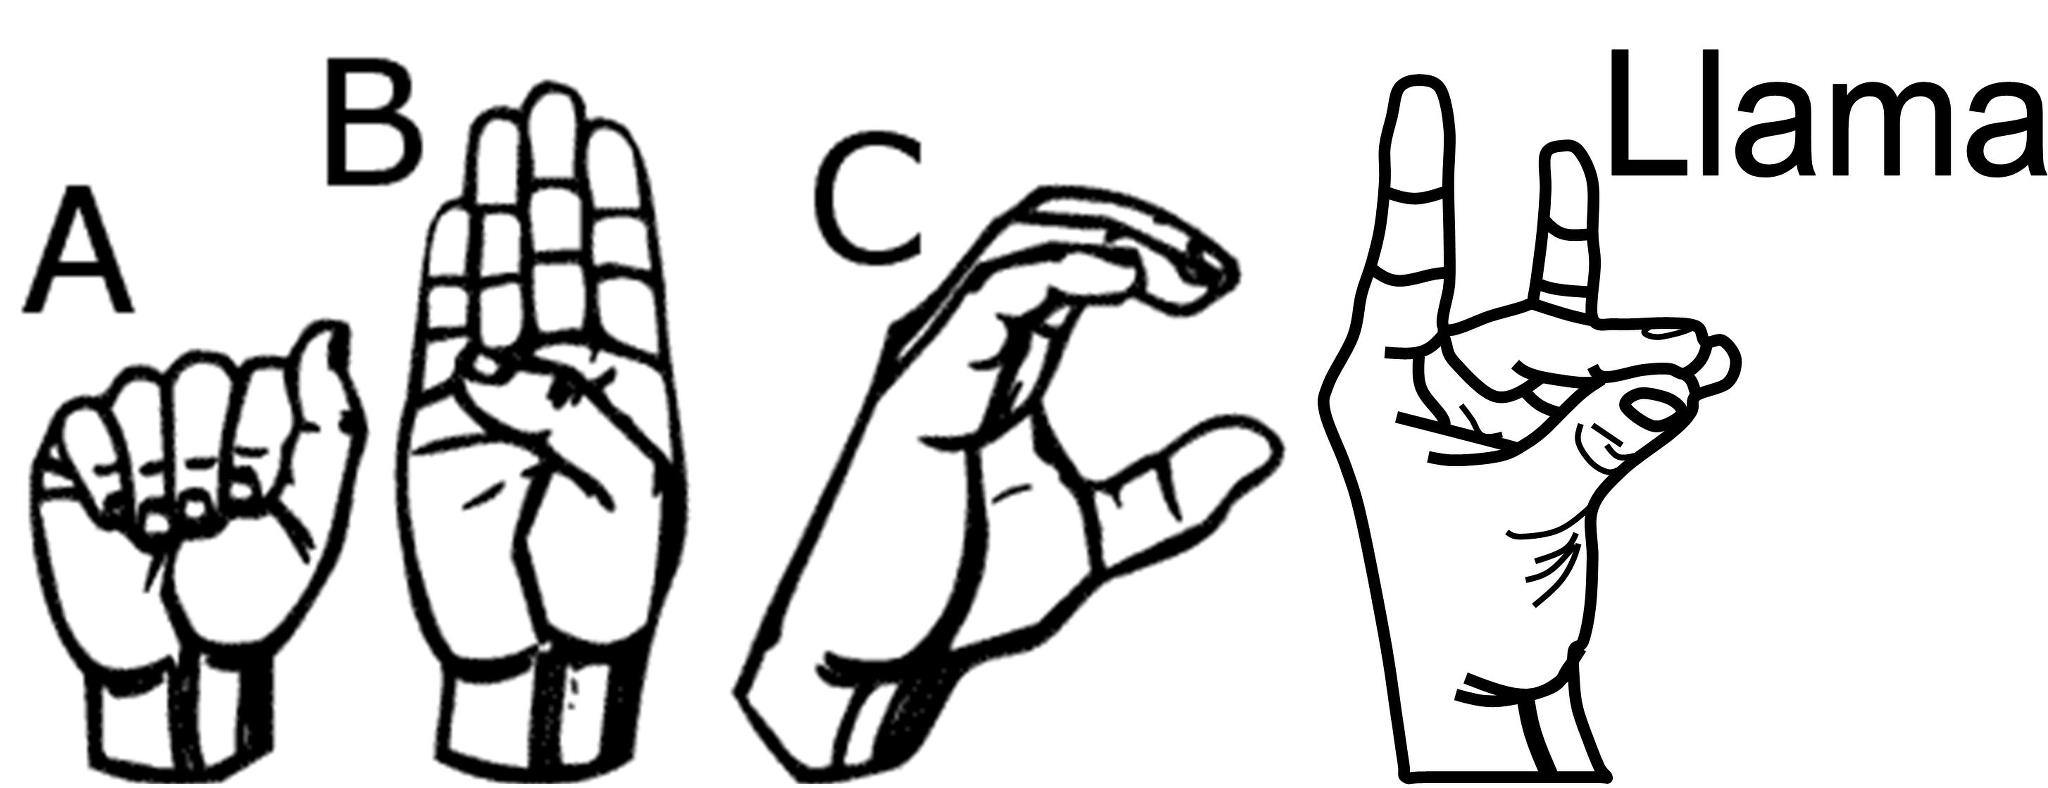 A.D.D. Sign Language